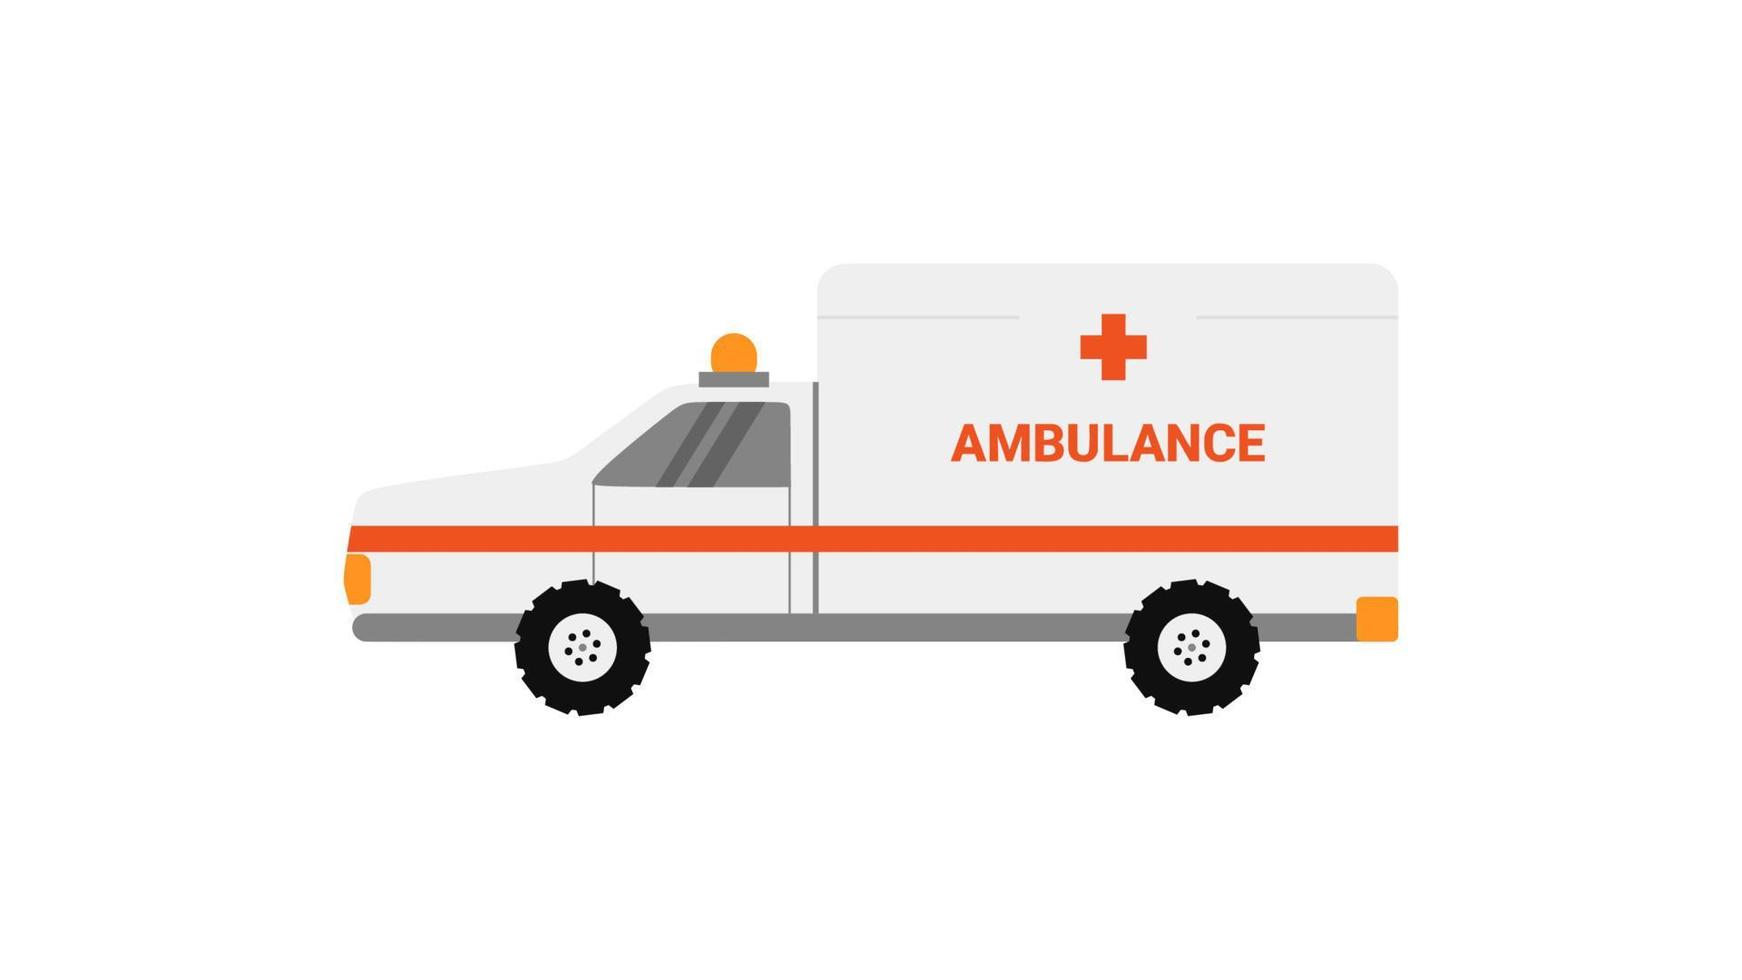 white ambulance element isolated on white background. vector